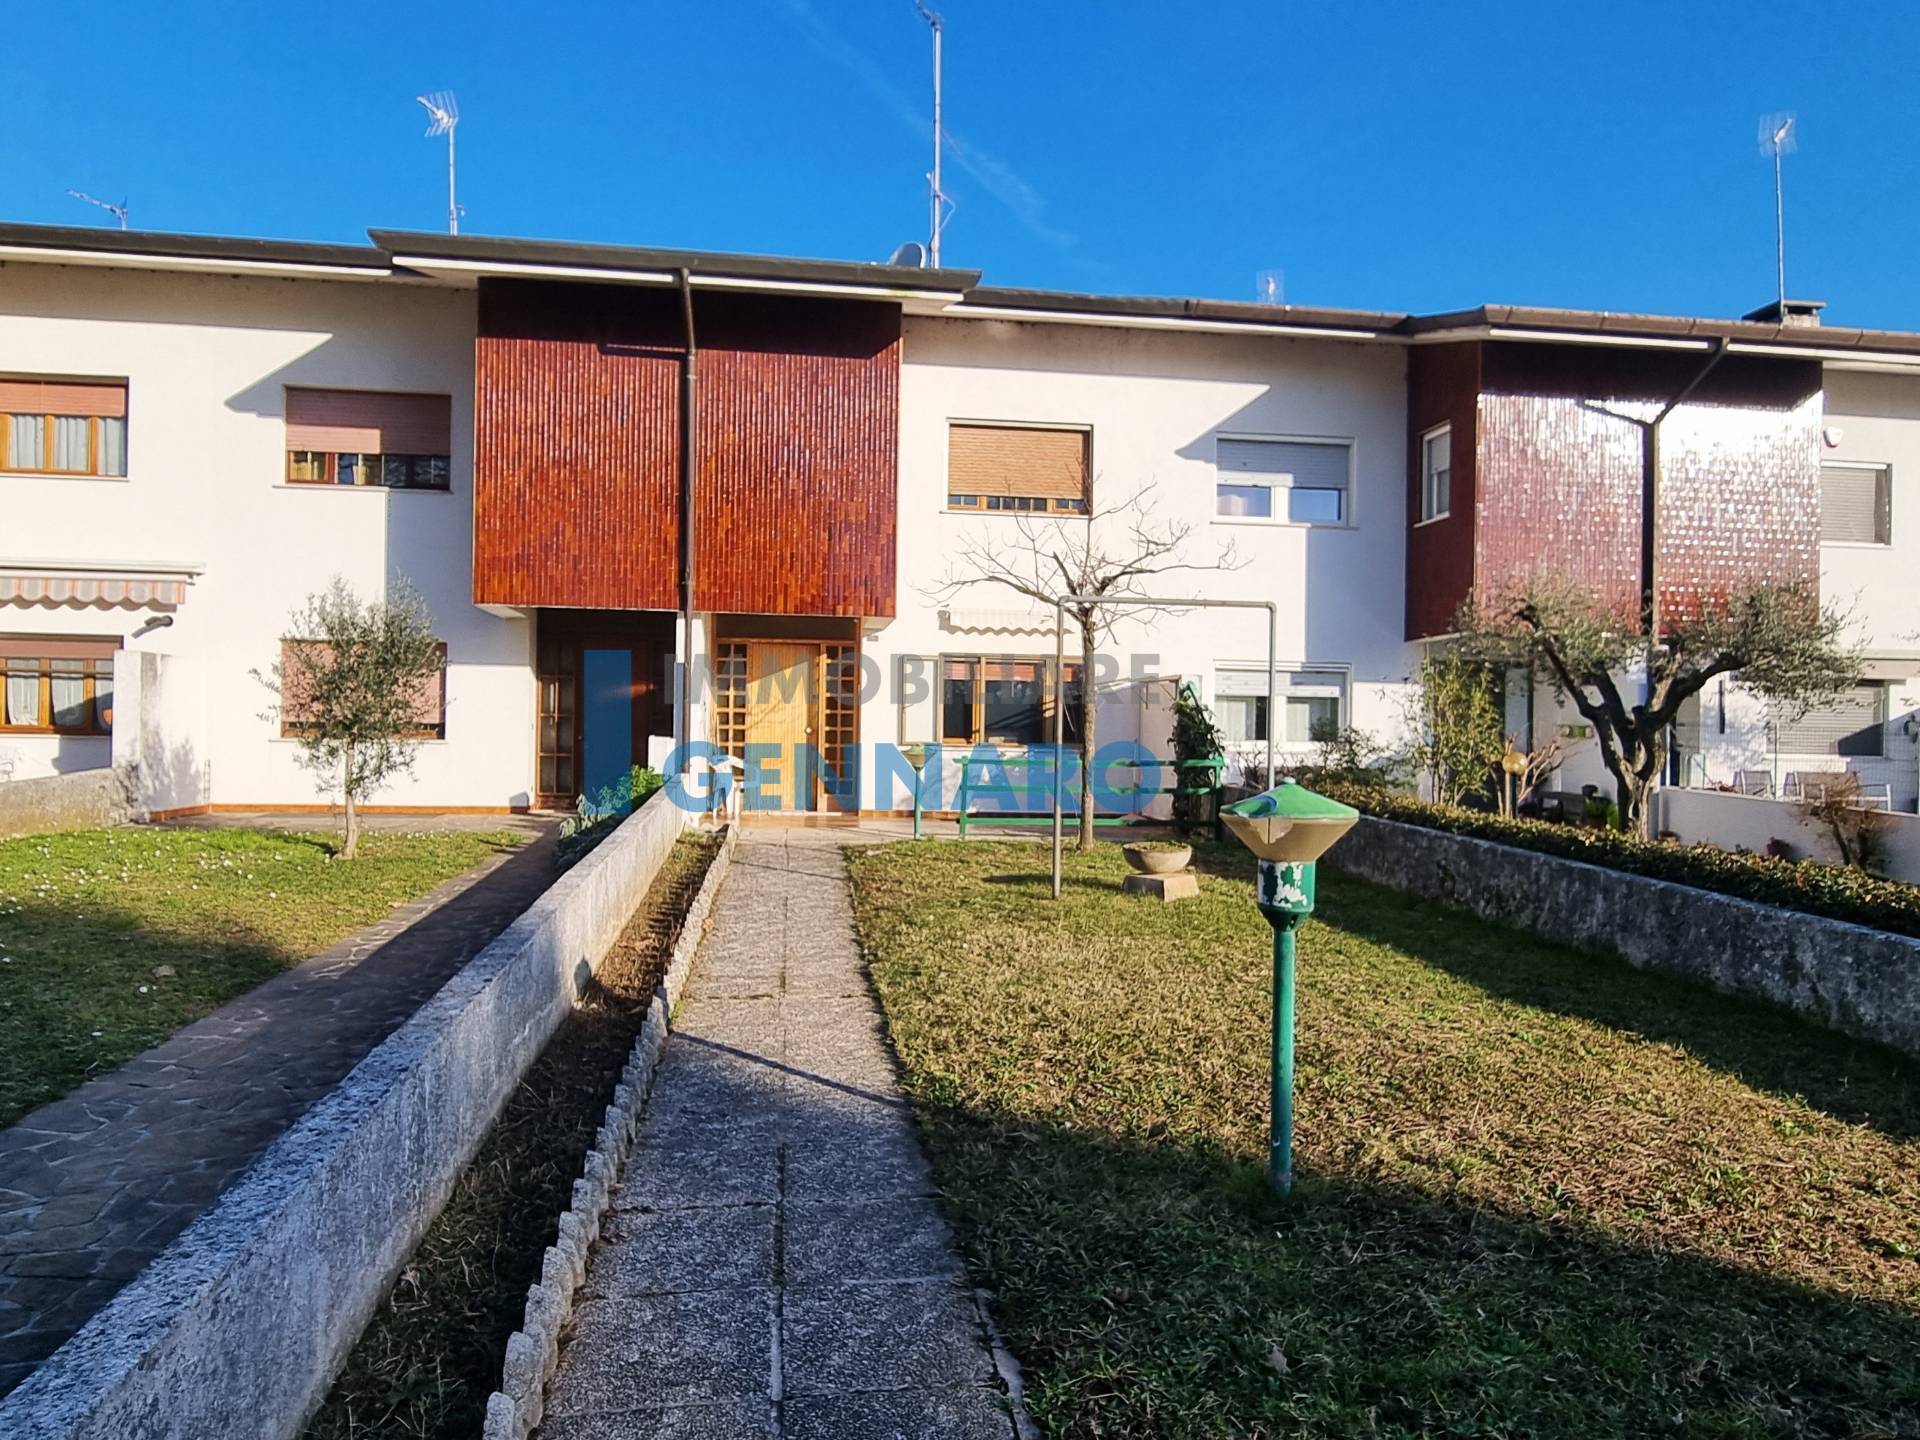 Villa a Schiera in vendita a Mortegliano, 4 locali, prezzo € 130.000 | PortaleAgenzieImmobiliari.it